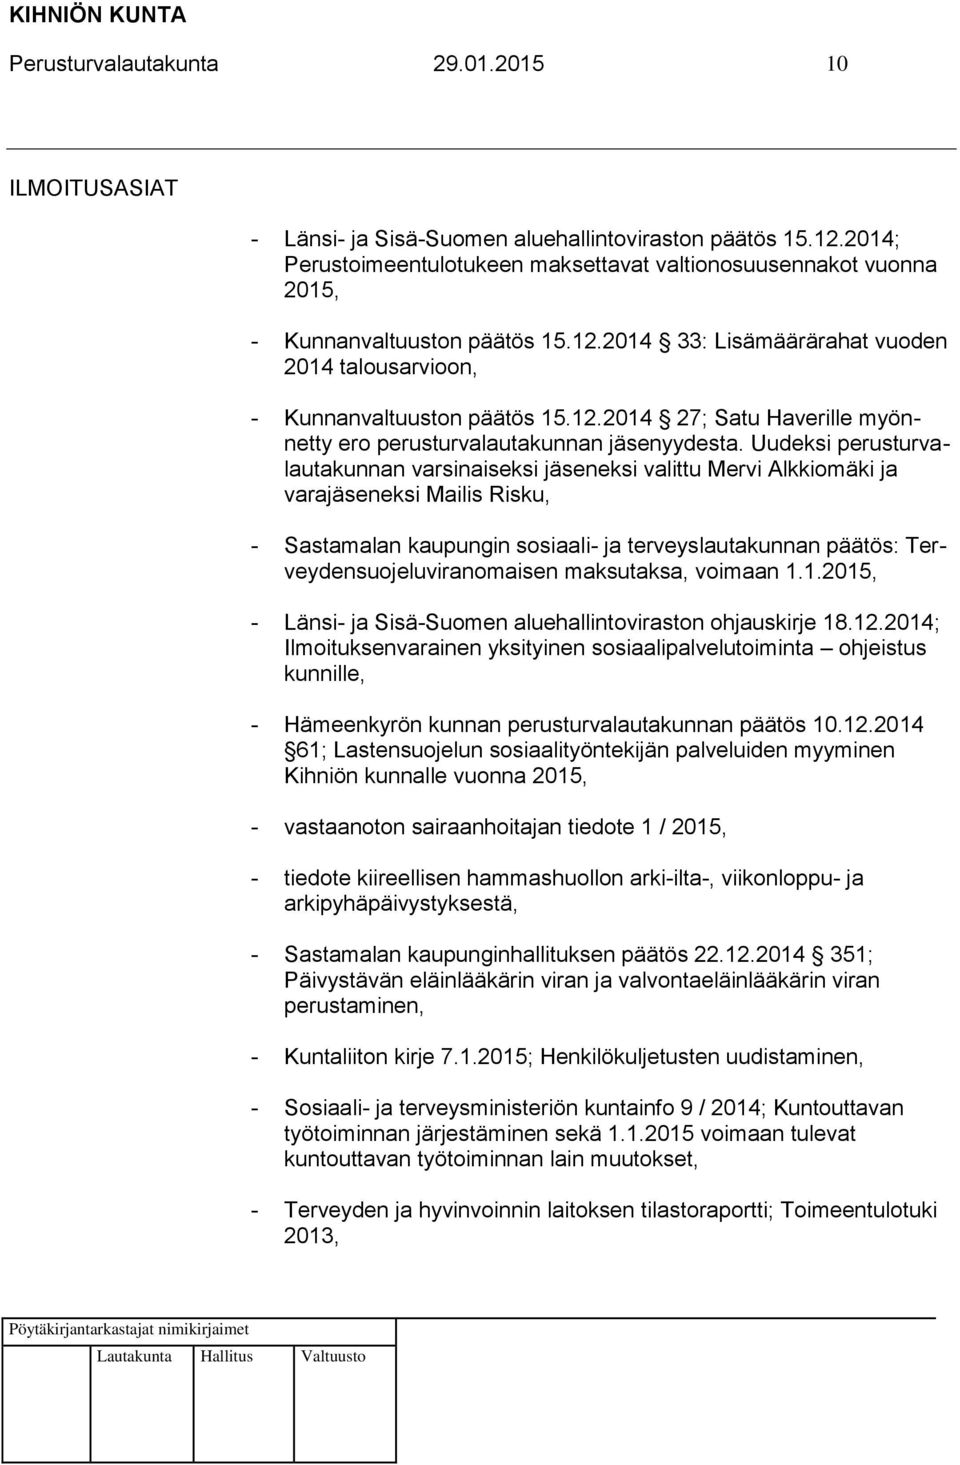 Uudeksi perusturvalautakunnan varsinaiseksi eksi valittu Mervi Alkkiomäki ja varaeksi Mailis Risku, - Sastamalan kaupungin sosiaali- ja terveyslautakunnan päätös: Terveydensuojeluviranomaisen